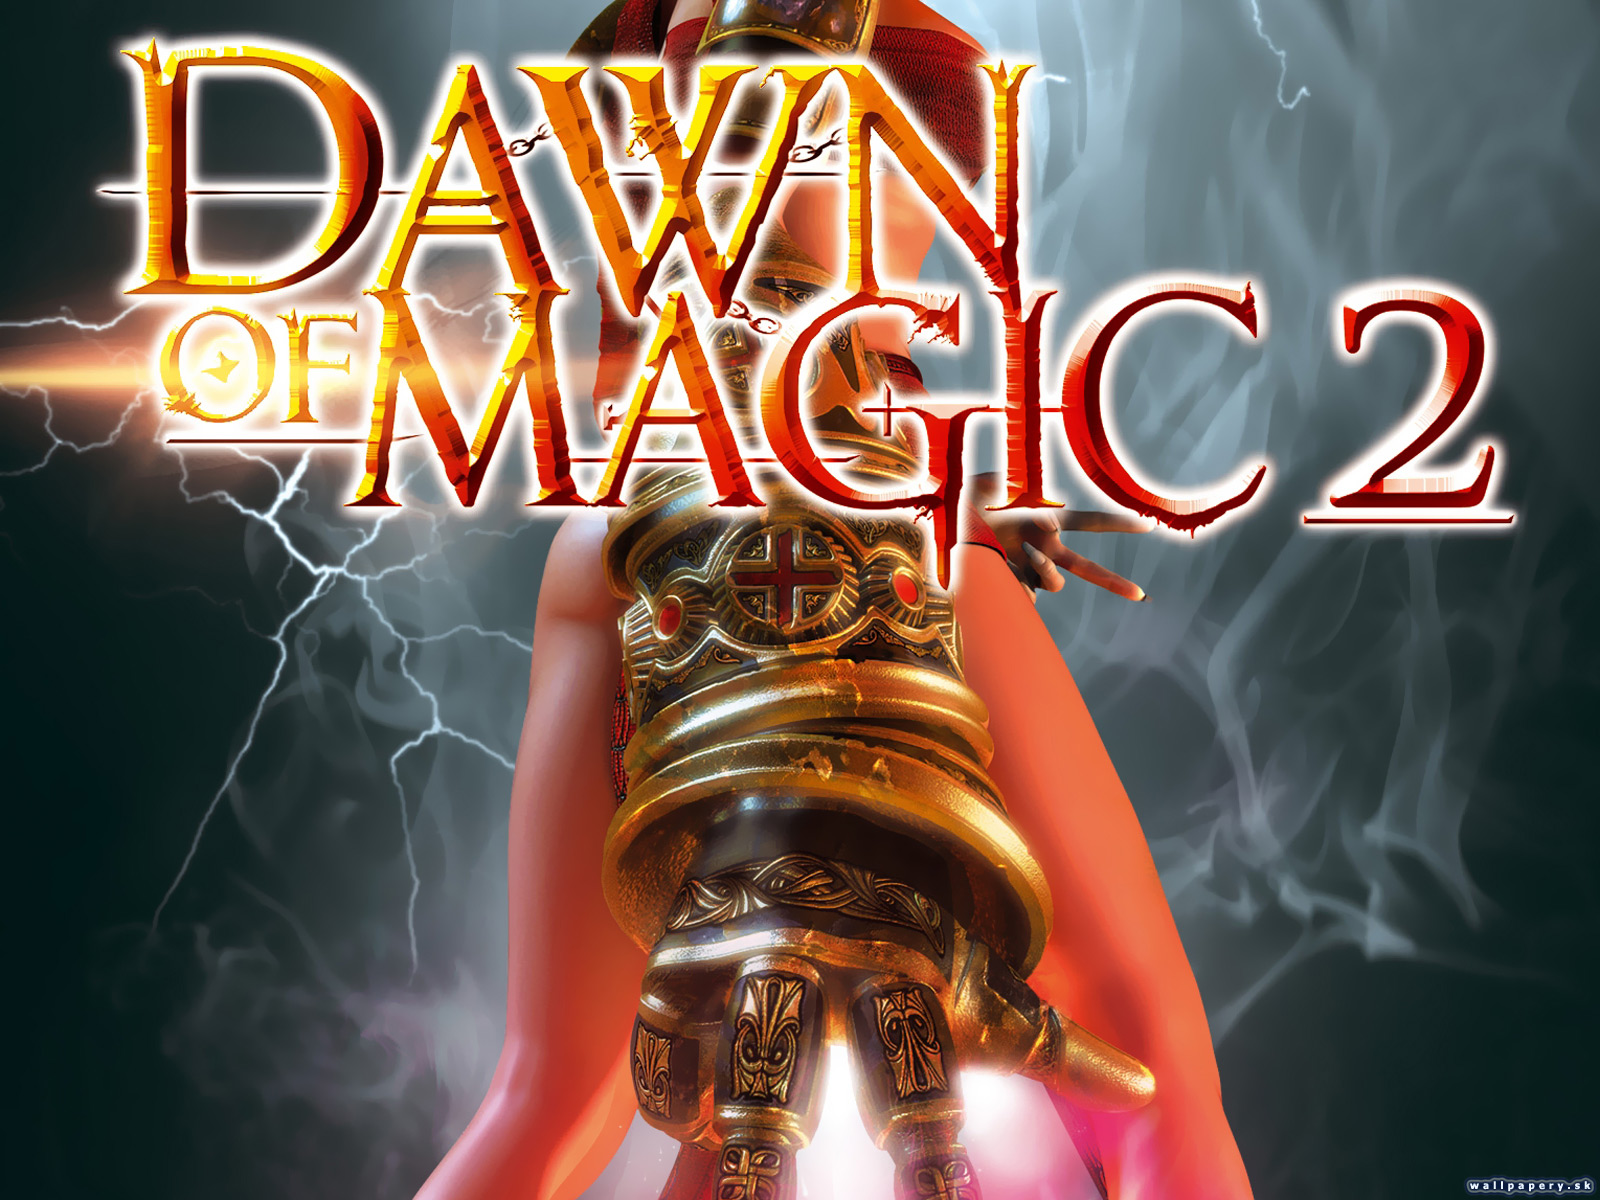 Dawn of Magic 2 - wallpaper 2